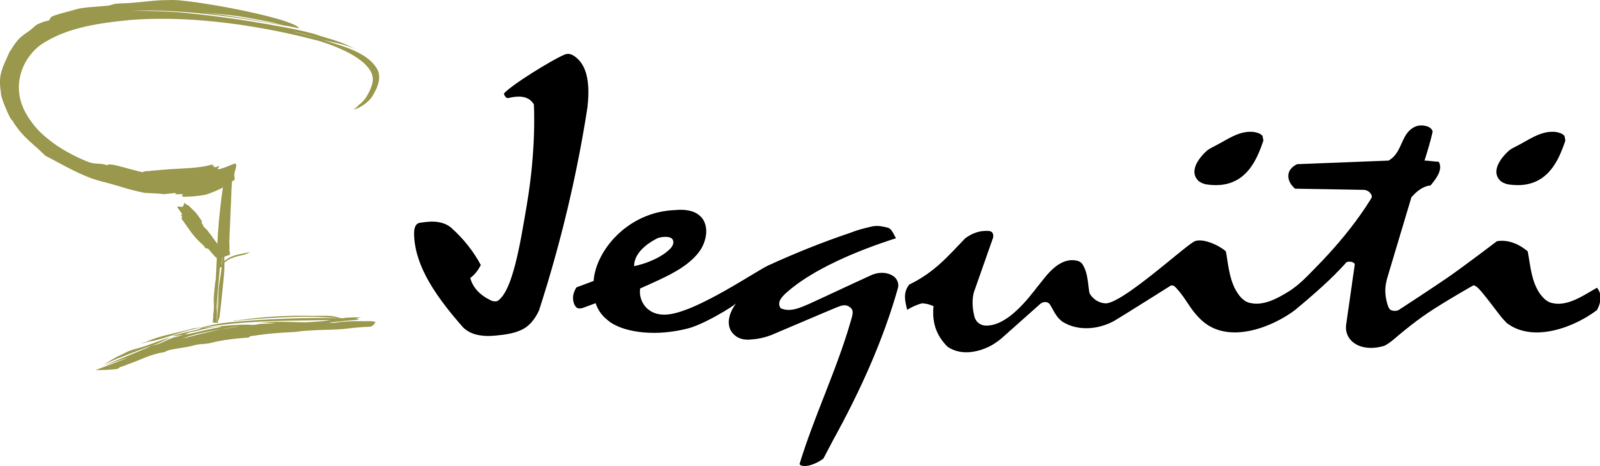 Jequiti Logo